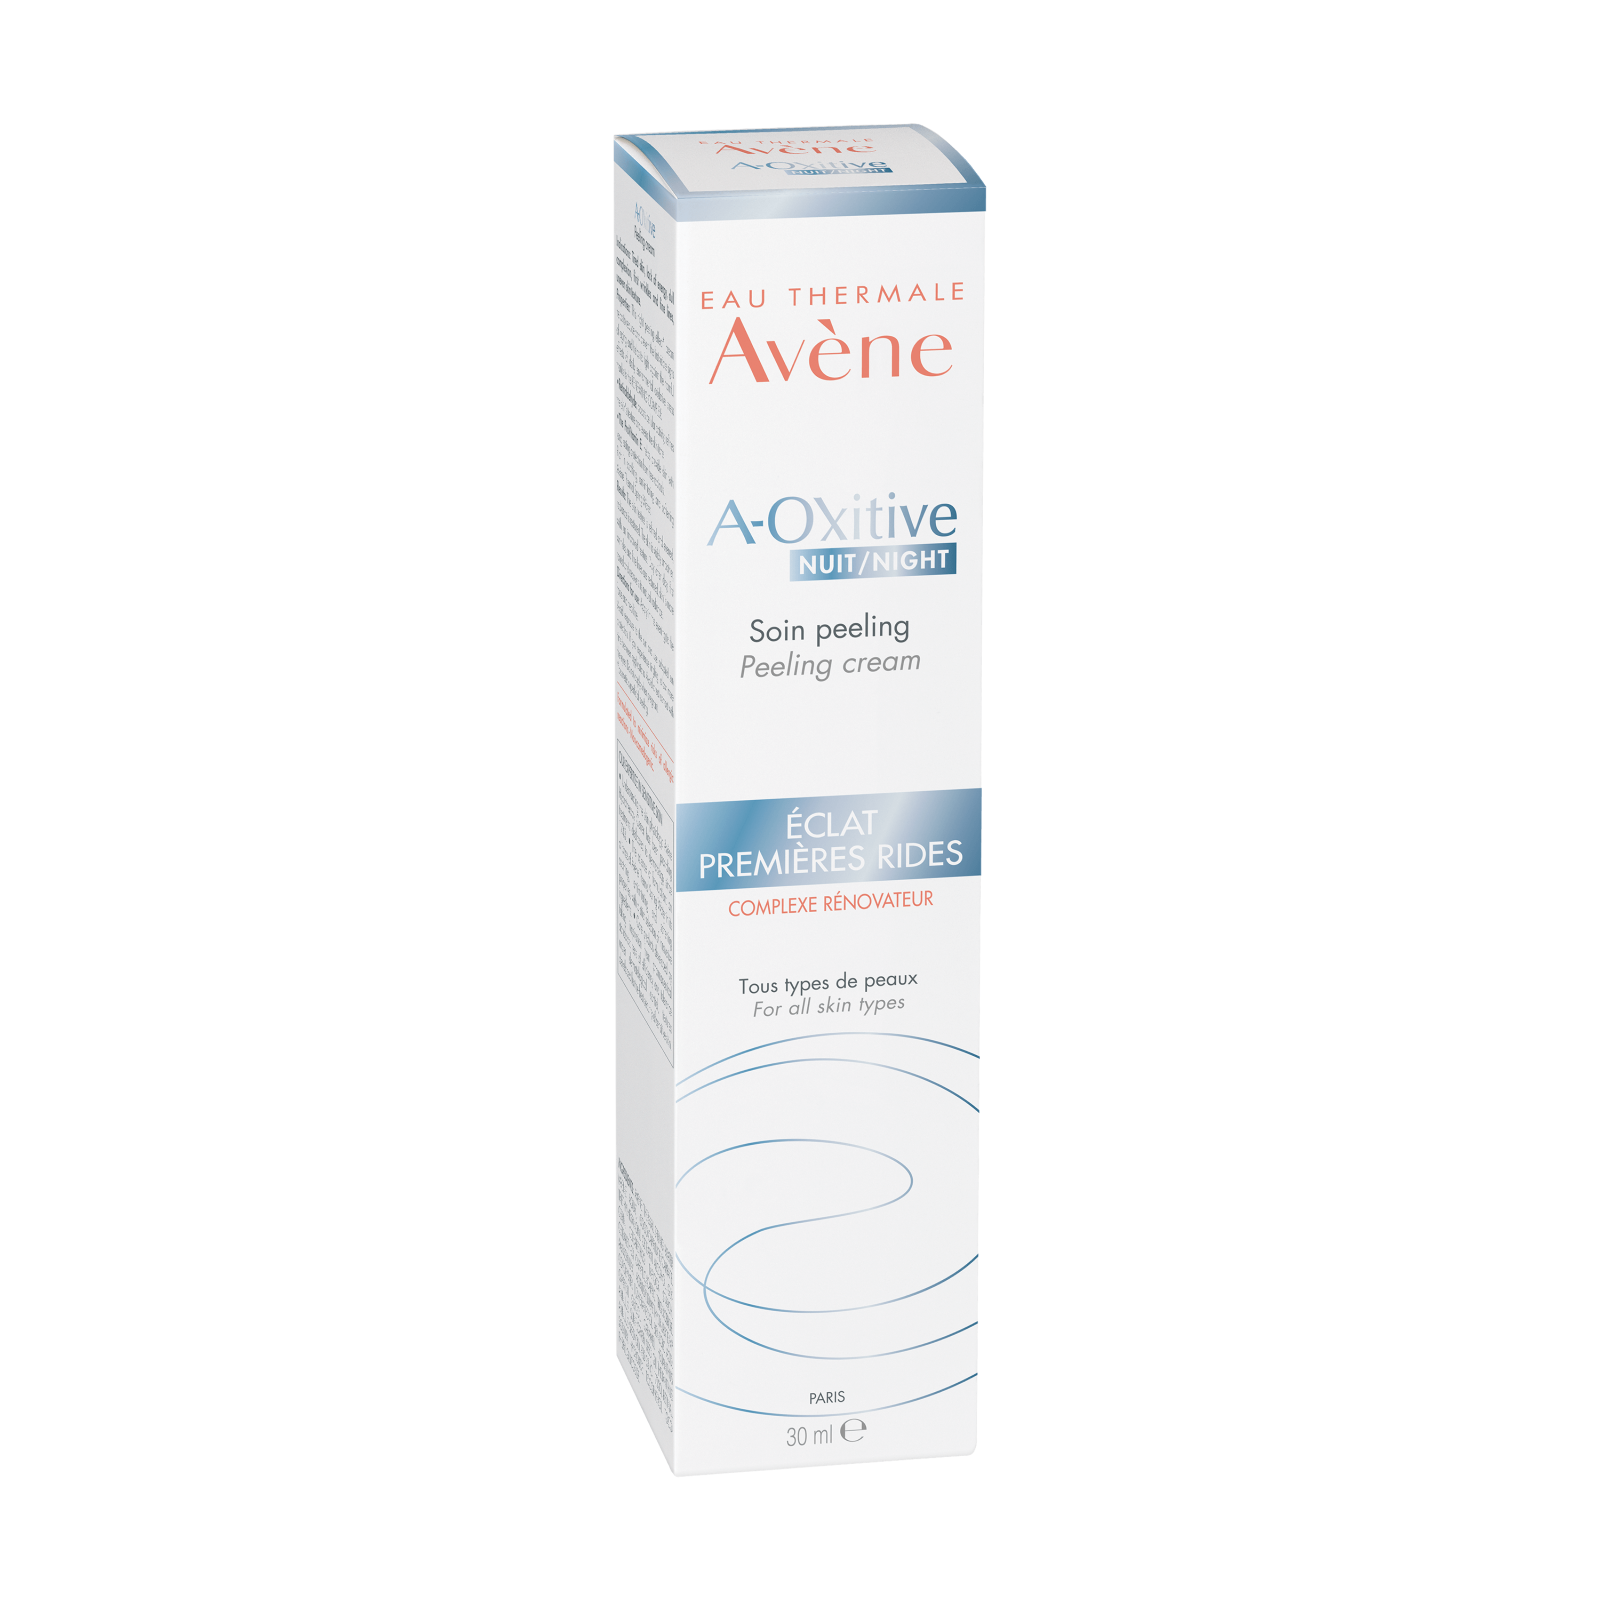 Creme si geluri de fata - Avene A-oxitive Crema de noapte exfolianta, 30ml , sinapis.ro